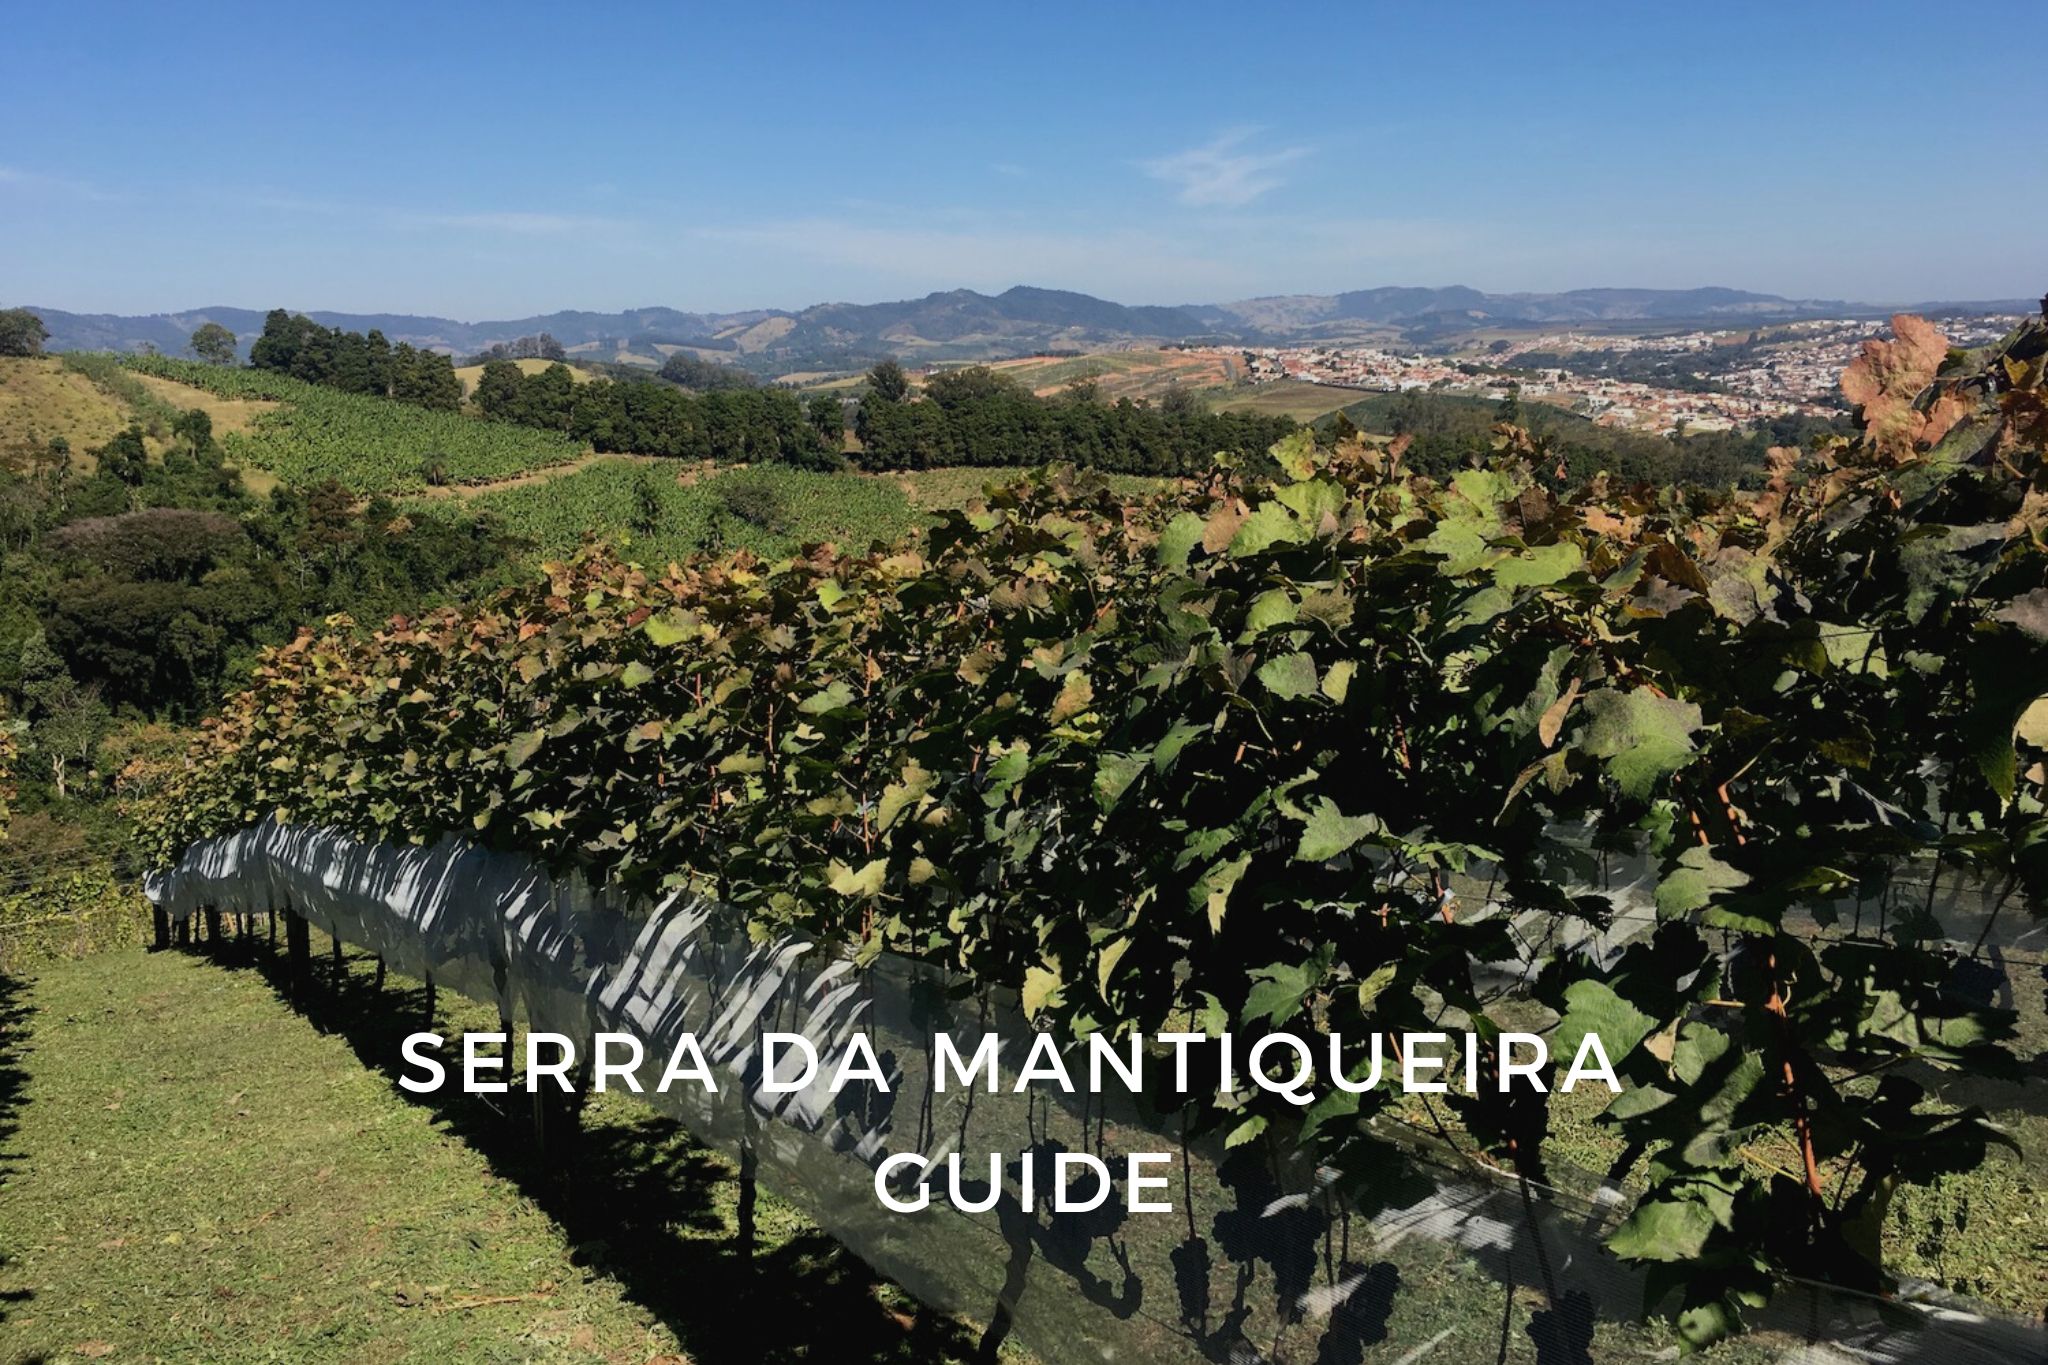 Serra da mantiqueira wine region in Brazil